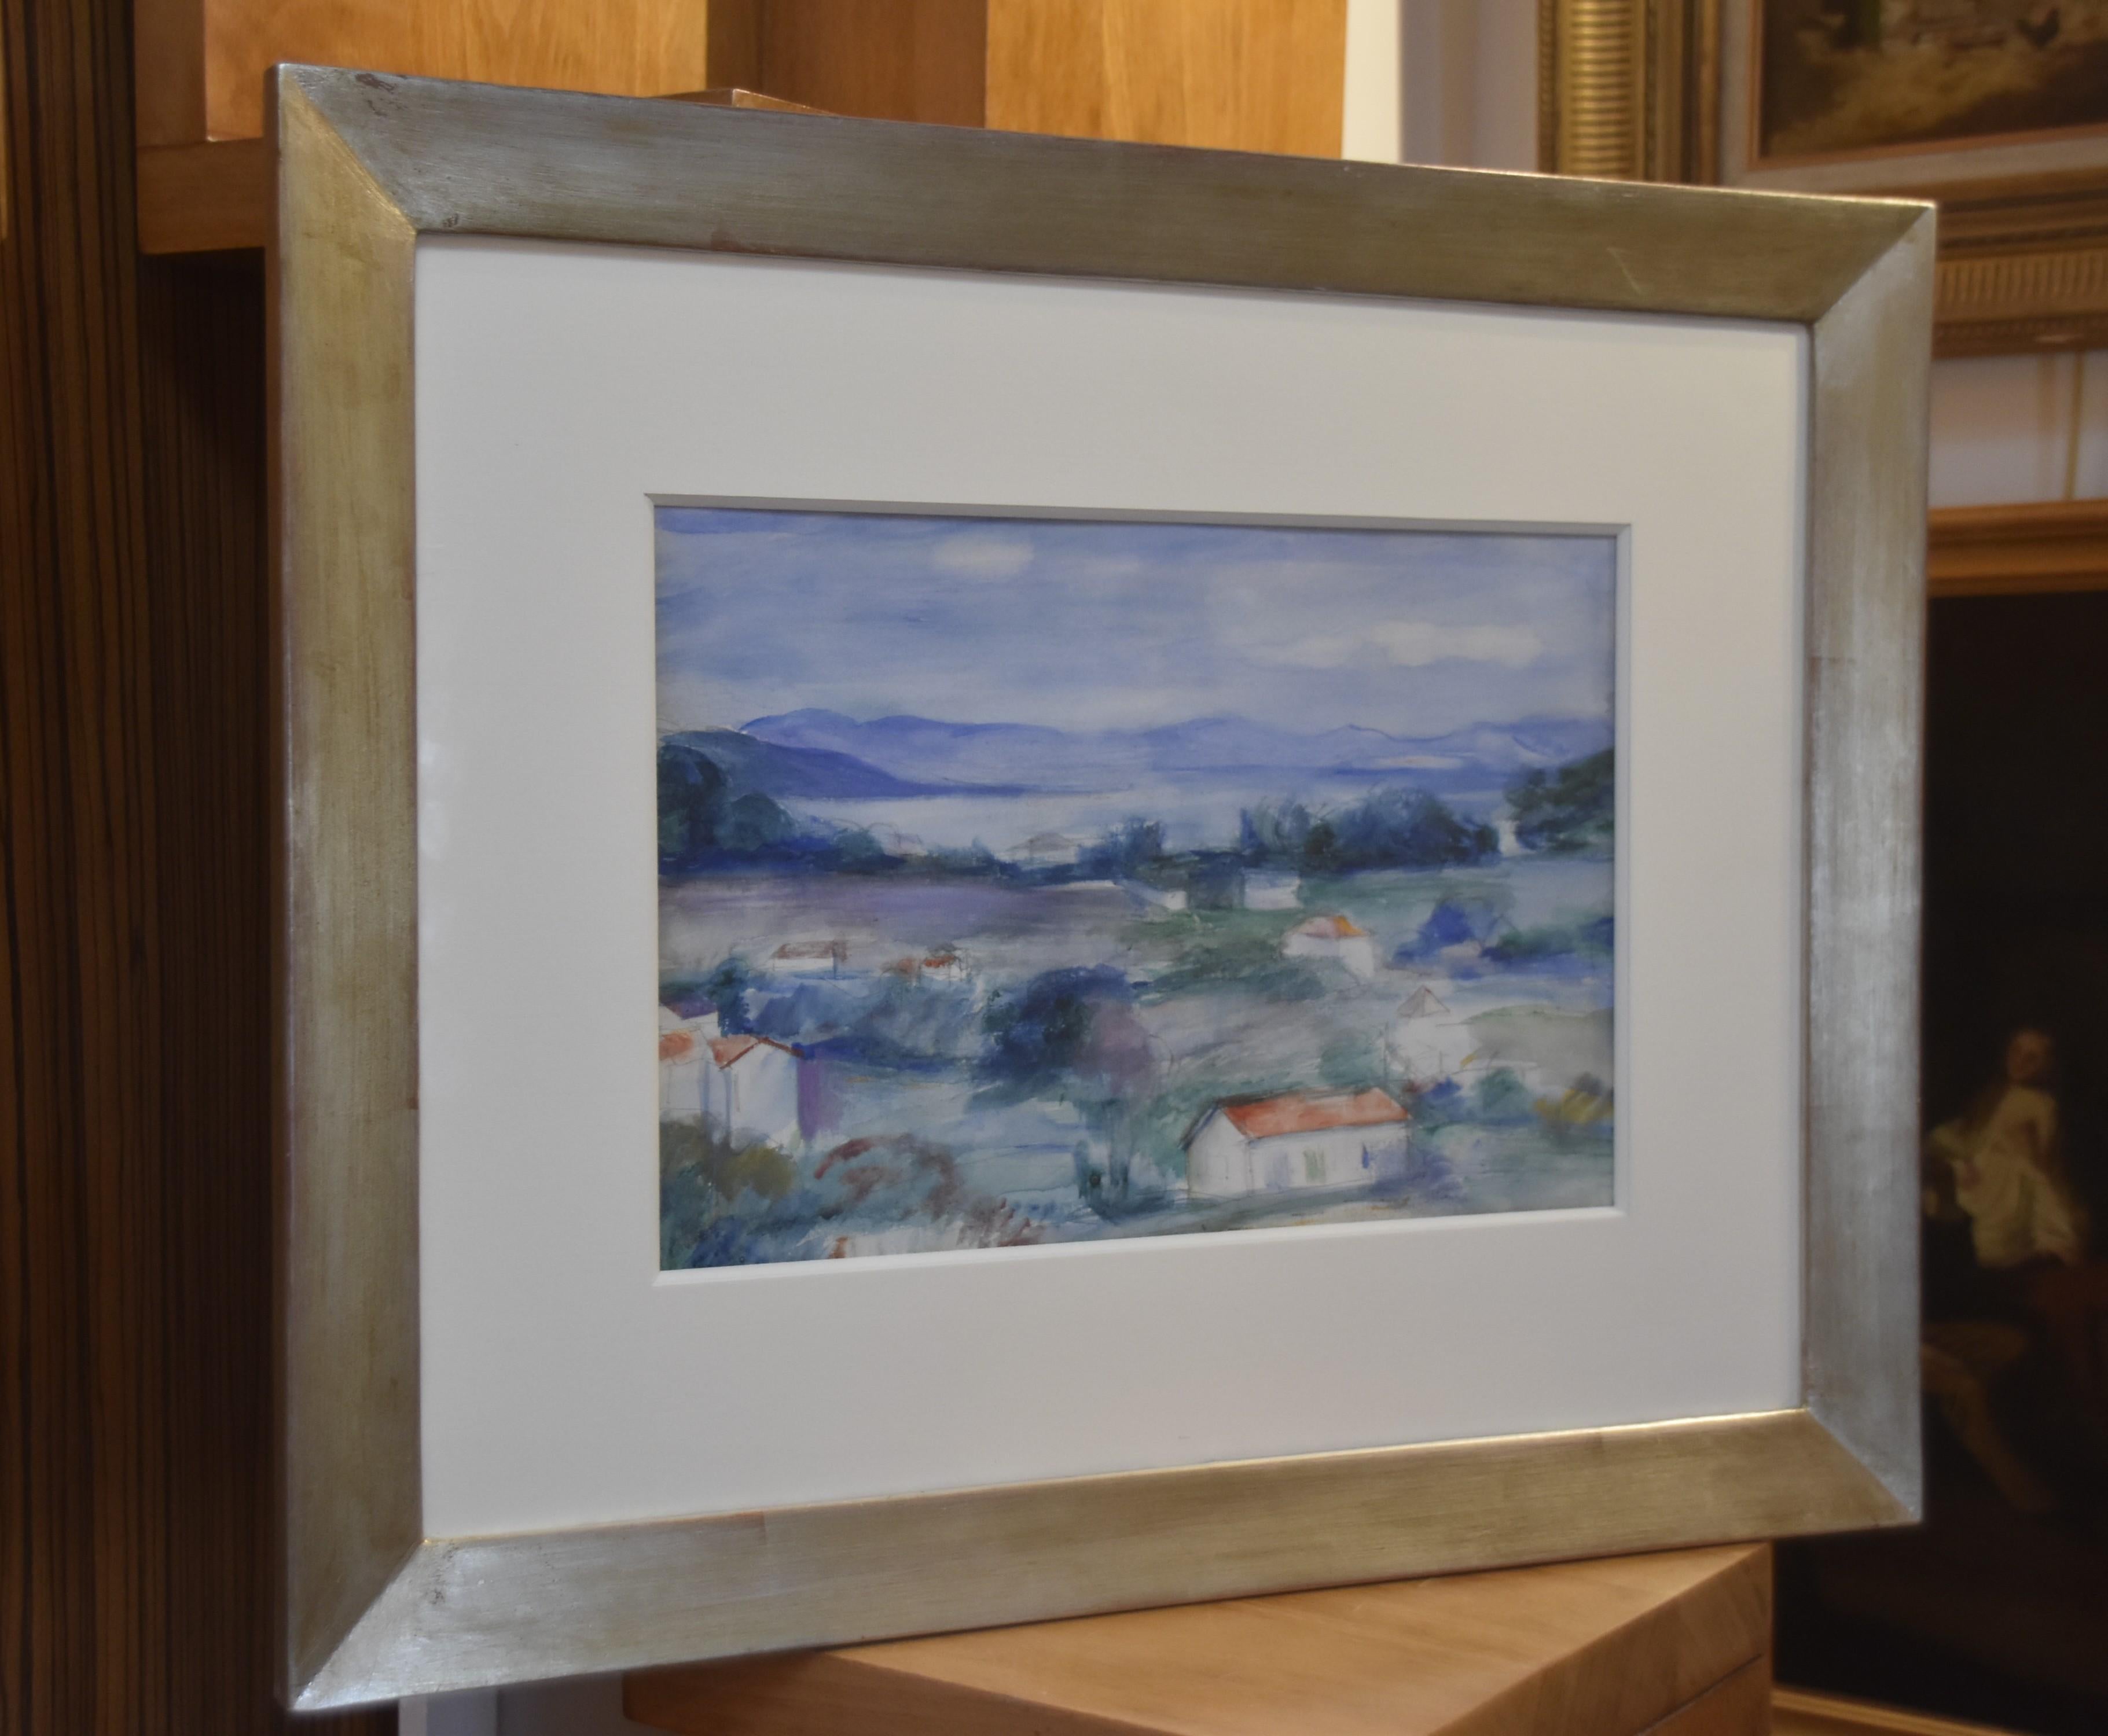 Henry Ottmann (1877-1927) zugeschrieben 
Eine Landschaft der Provence, 
Aquarell auf Papier
24 x 32 cm (Ansicht)
In einem modernen Rahmen  : 45 x 55.5 cm

Ungerahmt scheint das Werk größer zu sein (siehe das dritte Foto). Das Bild ist zwar durch den